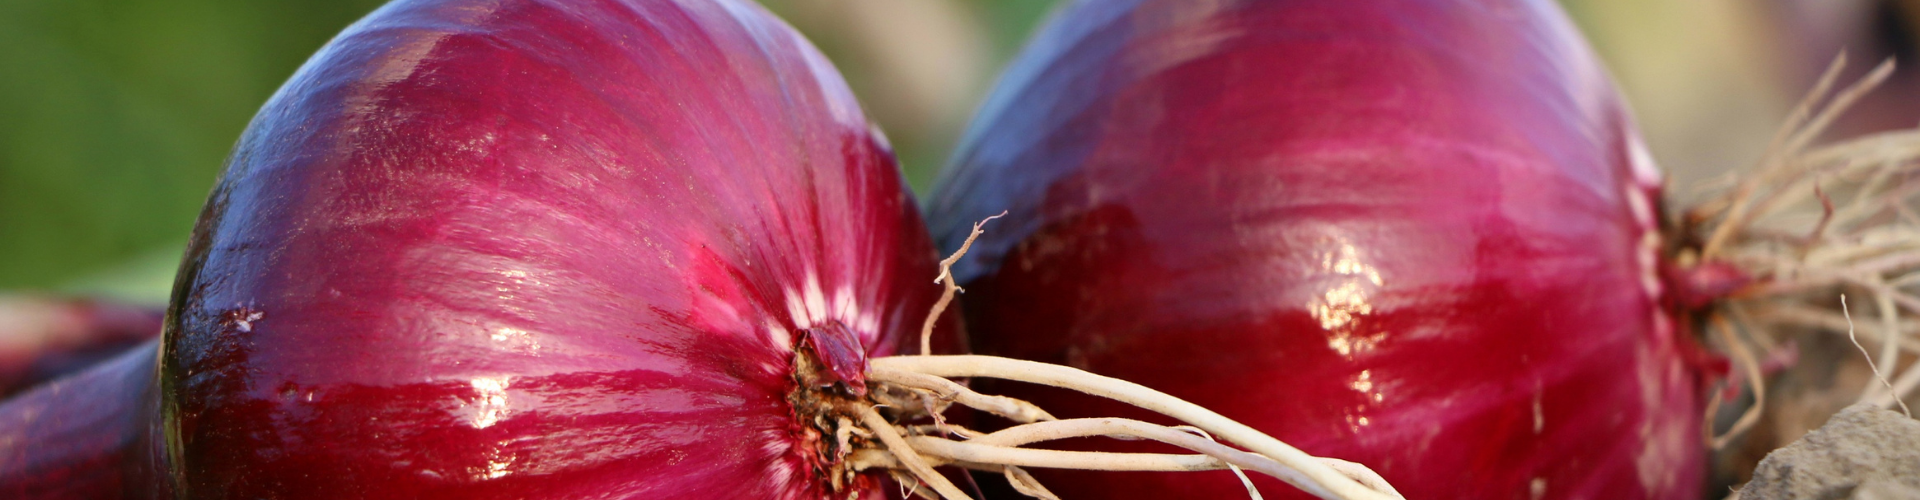 L'oignon : semis, culture, et récolte - Blog - Dr. Jonquille & Mr. Ail